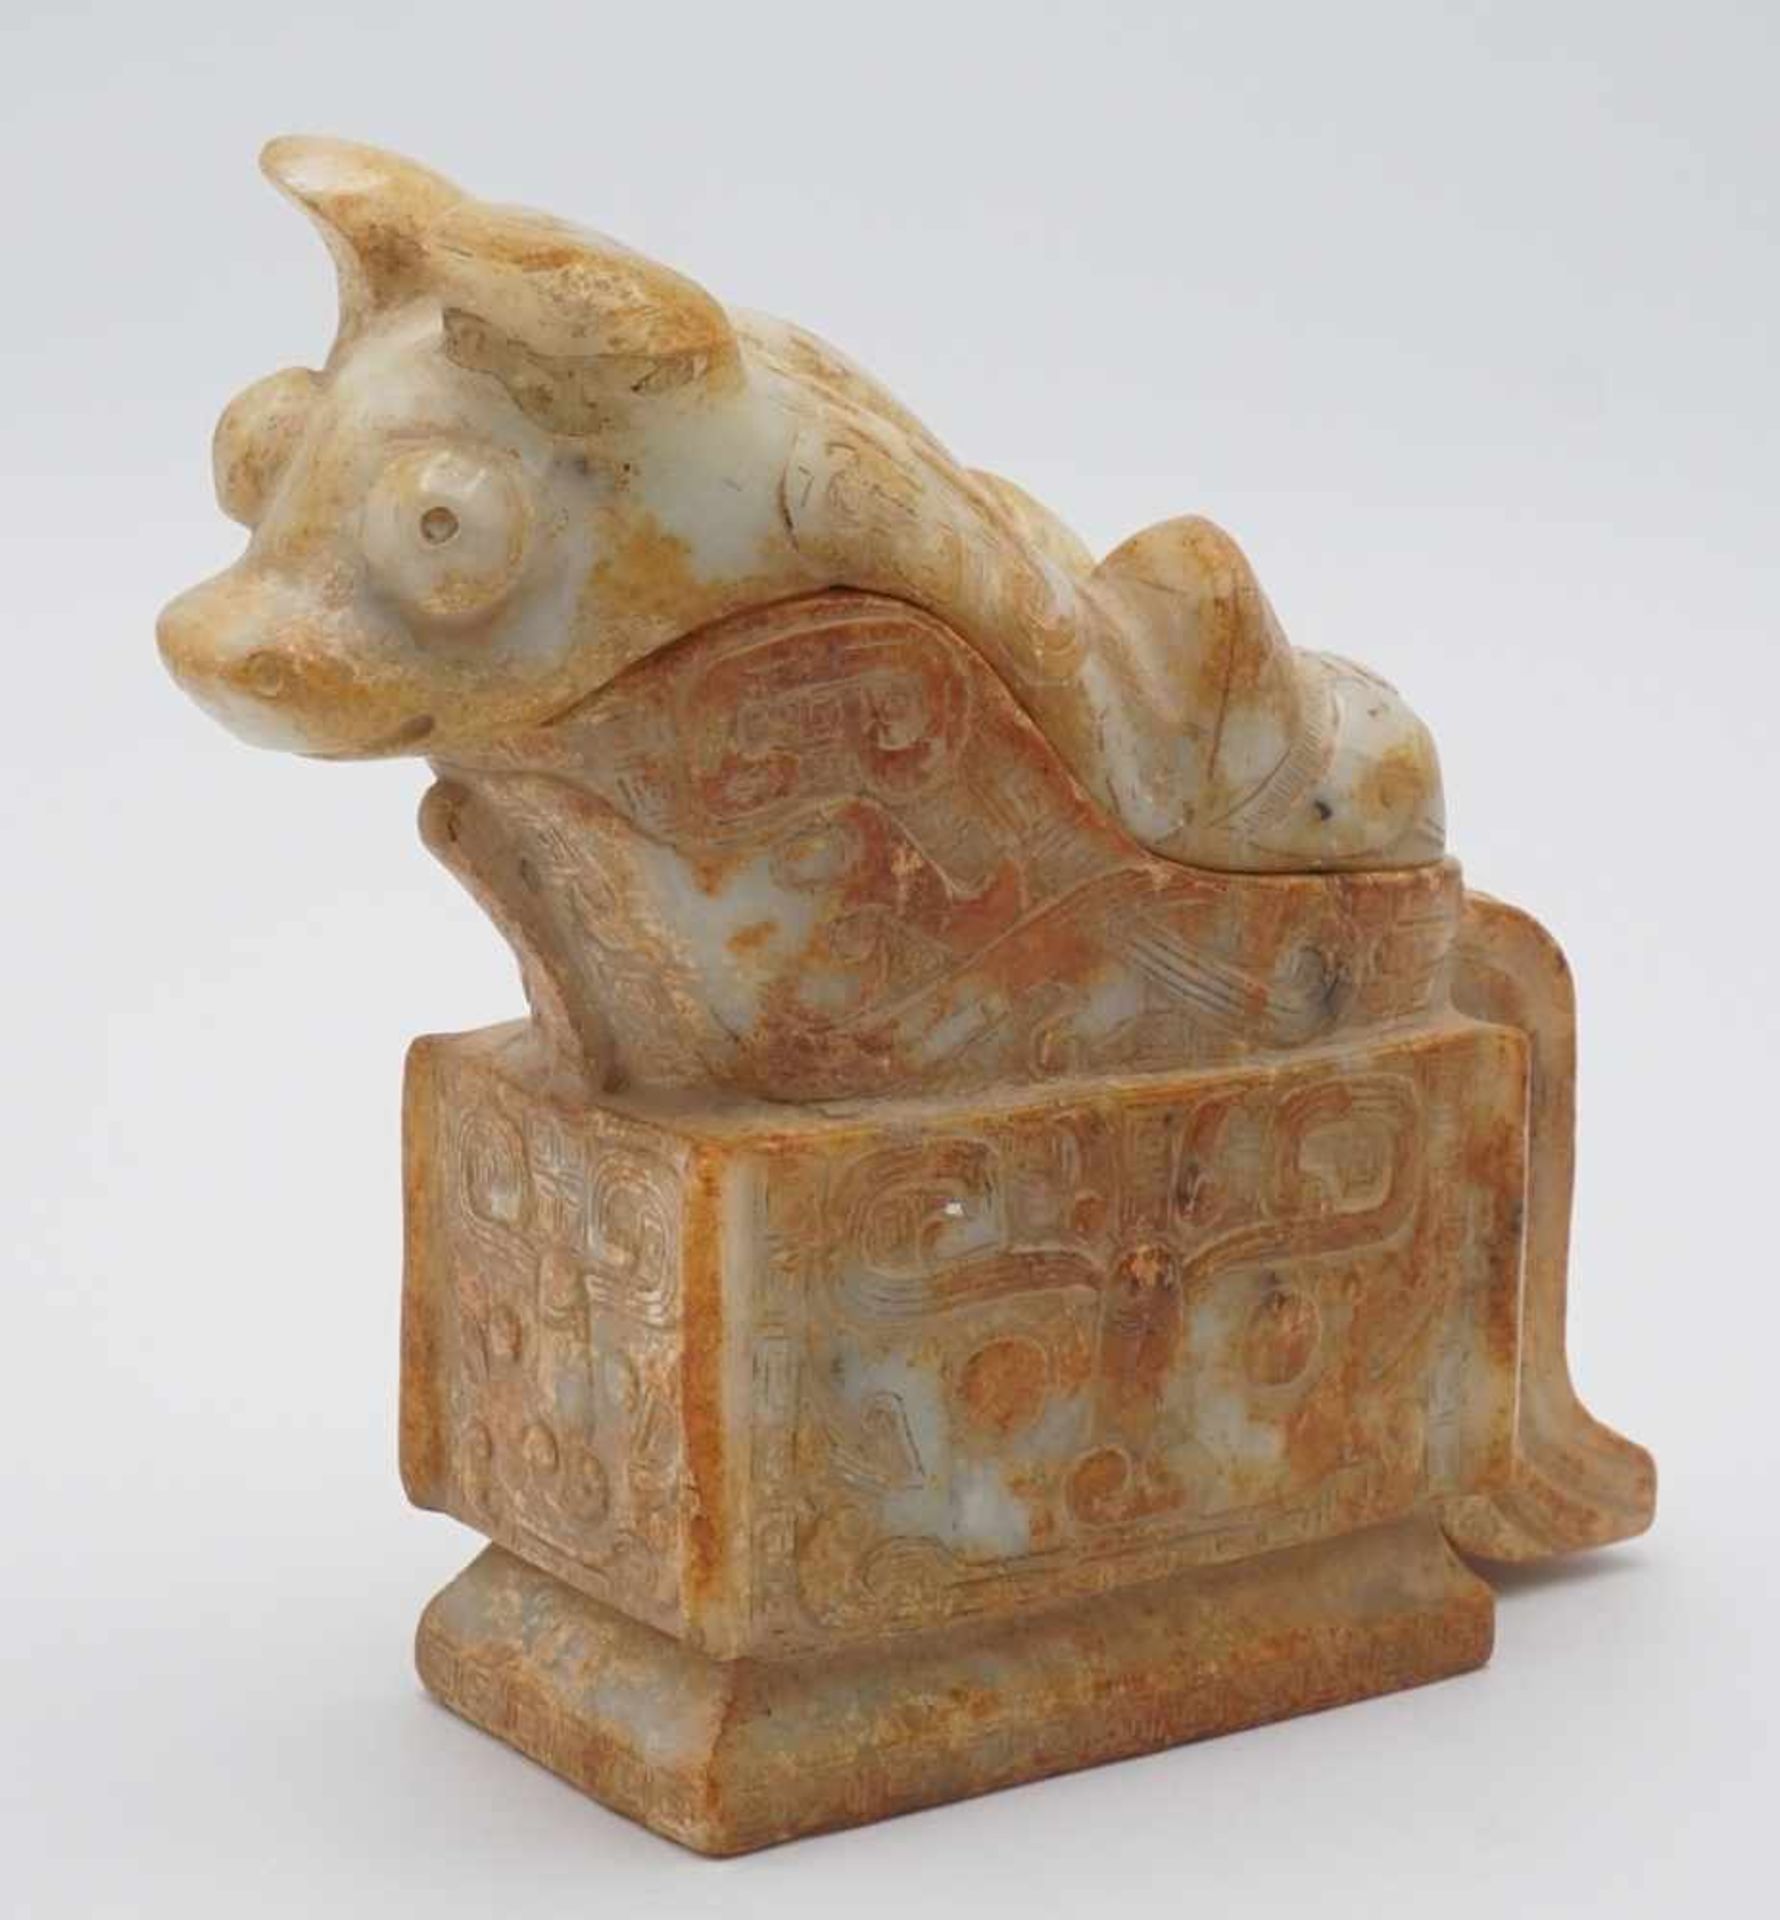 Deckelgefäß / Kultgefäß des Guang-Typ, China, 20. Jh.im Stil der Zhou- / Shang-Dynastien, den damals